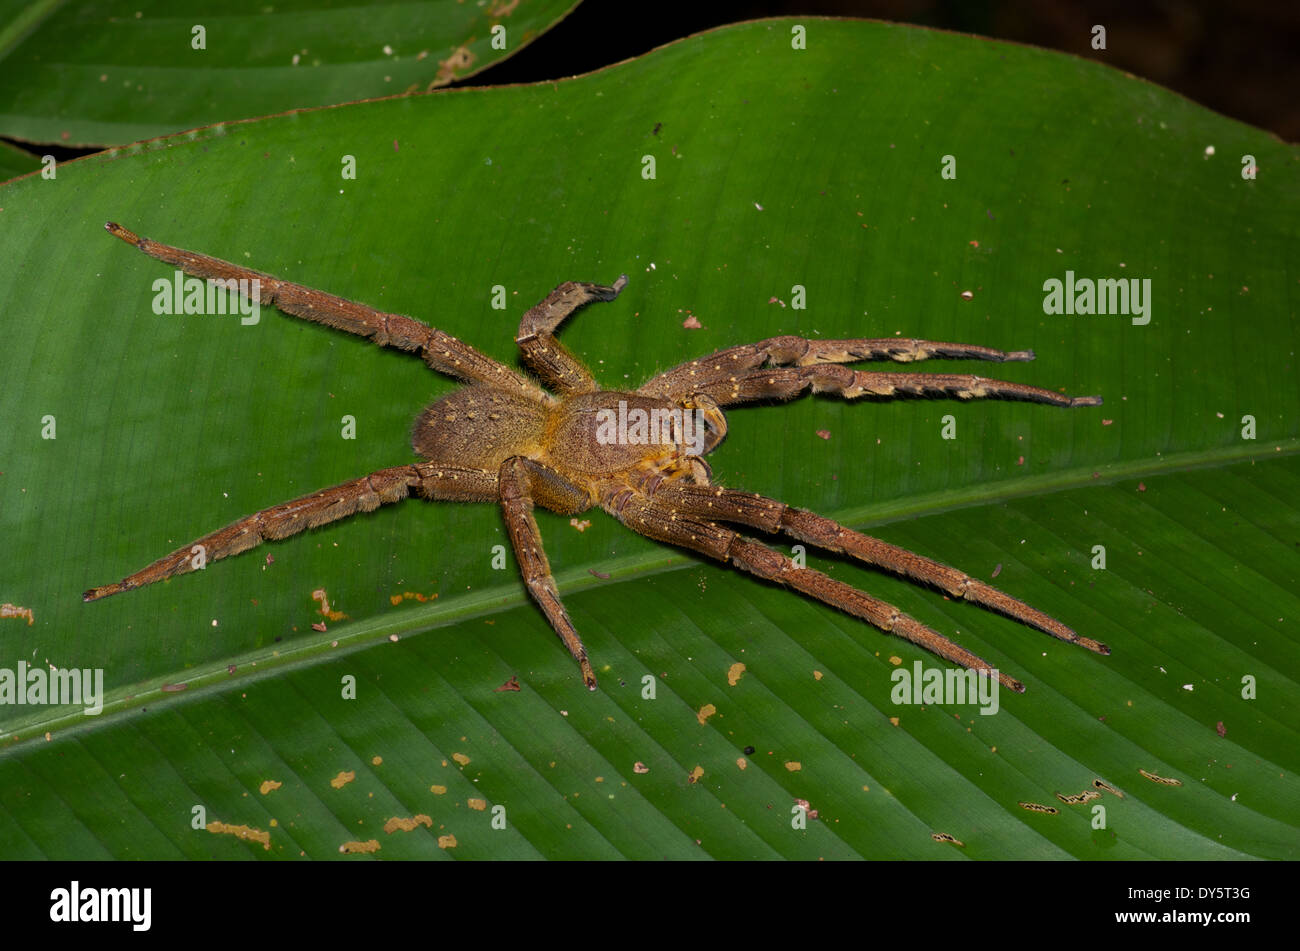 Amazon Spinne Stockfotos und -bilder Kaufen - Alamy